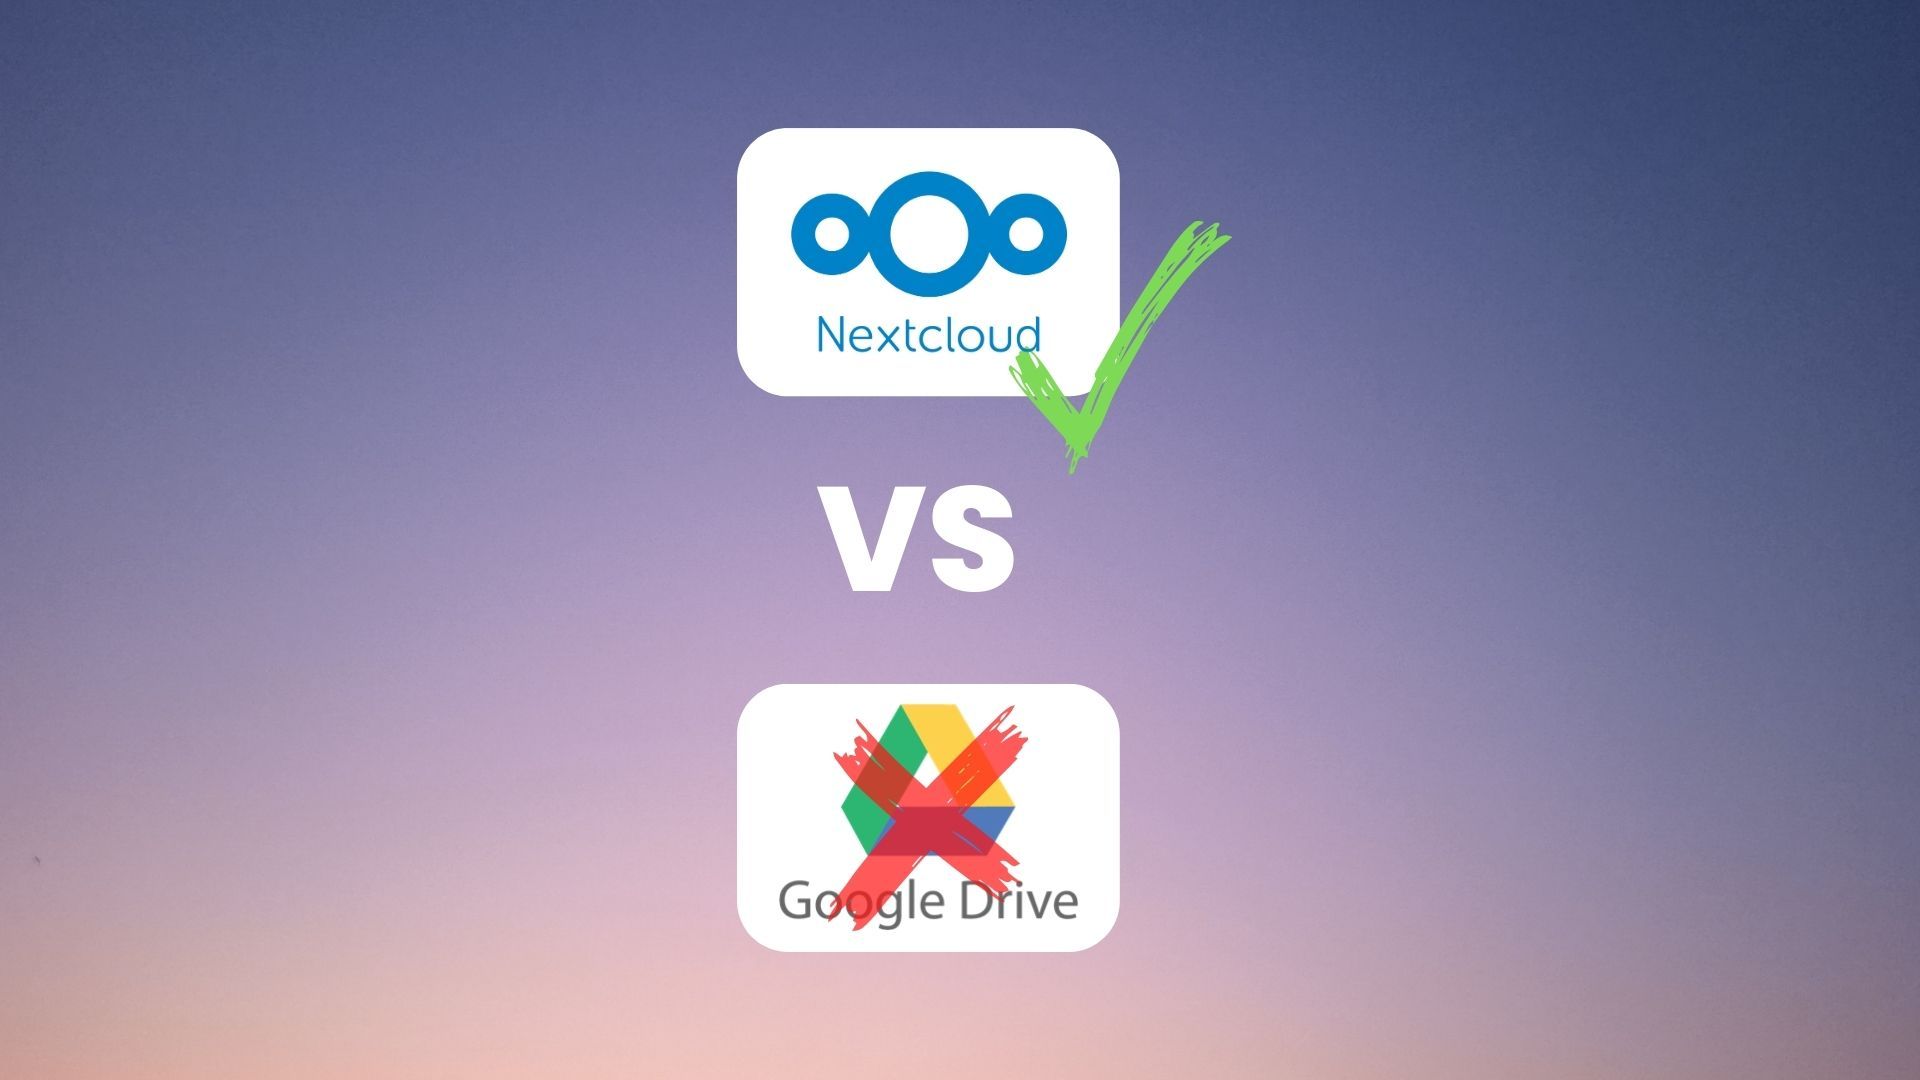 Nextcloud - Open source content collaboration platform